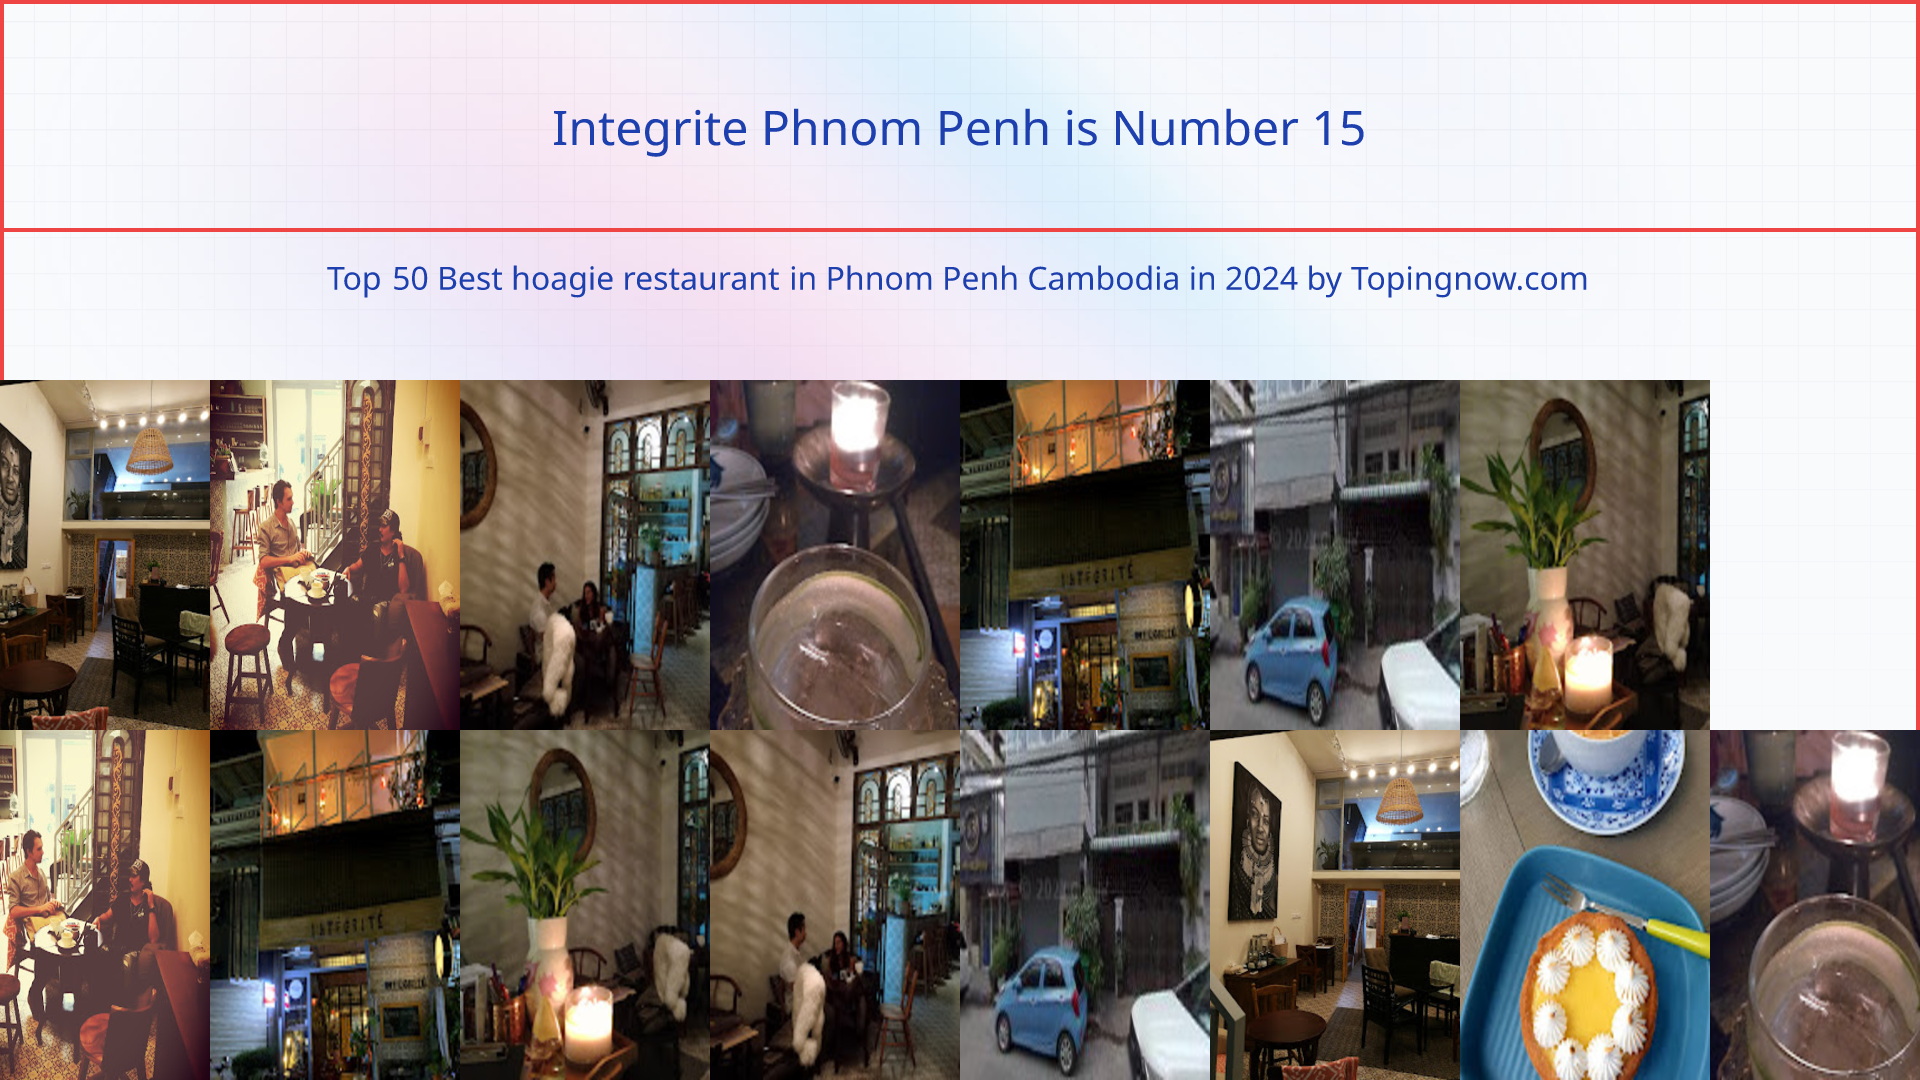 Integrite Phnom Penh: Top 50 Best hoagie restaurant in Phnom Penh Cambodia in 2024